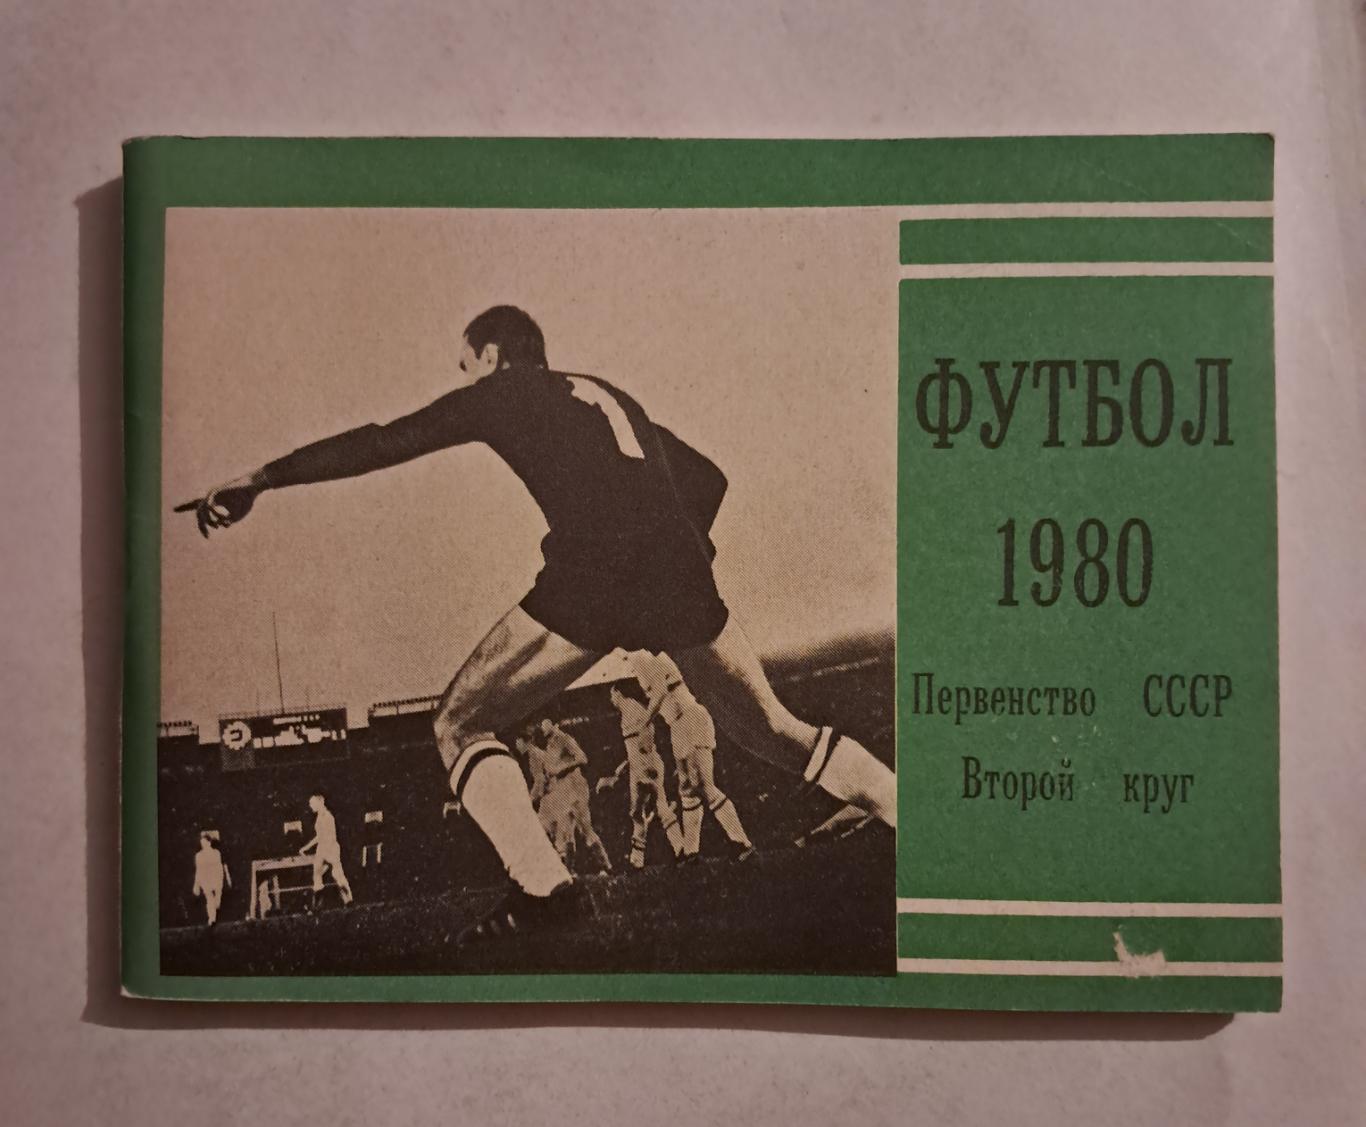 Календарь-справочник по футболу 1980 Москва.